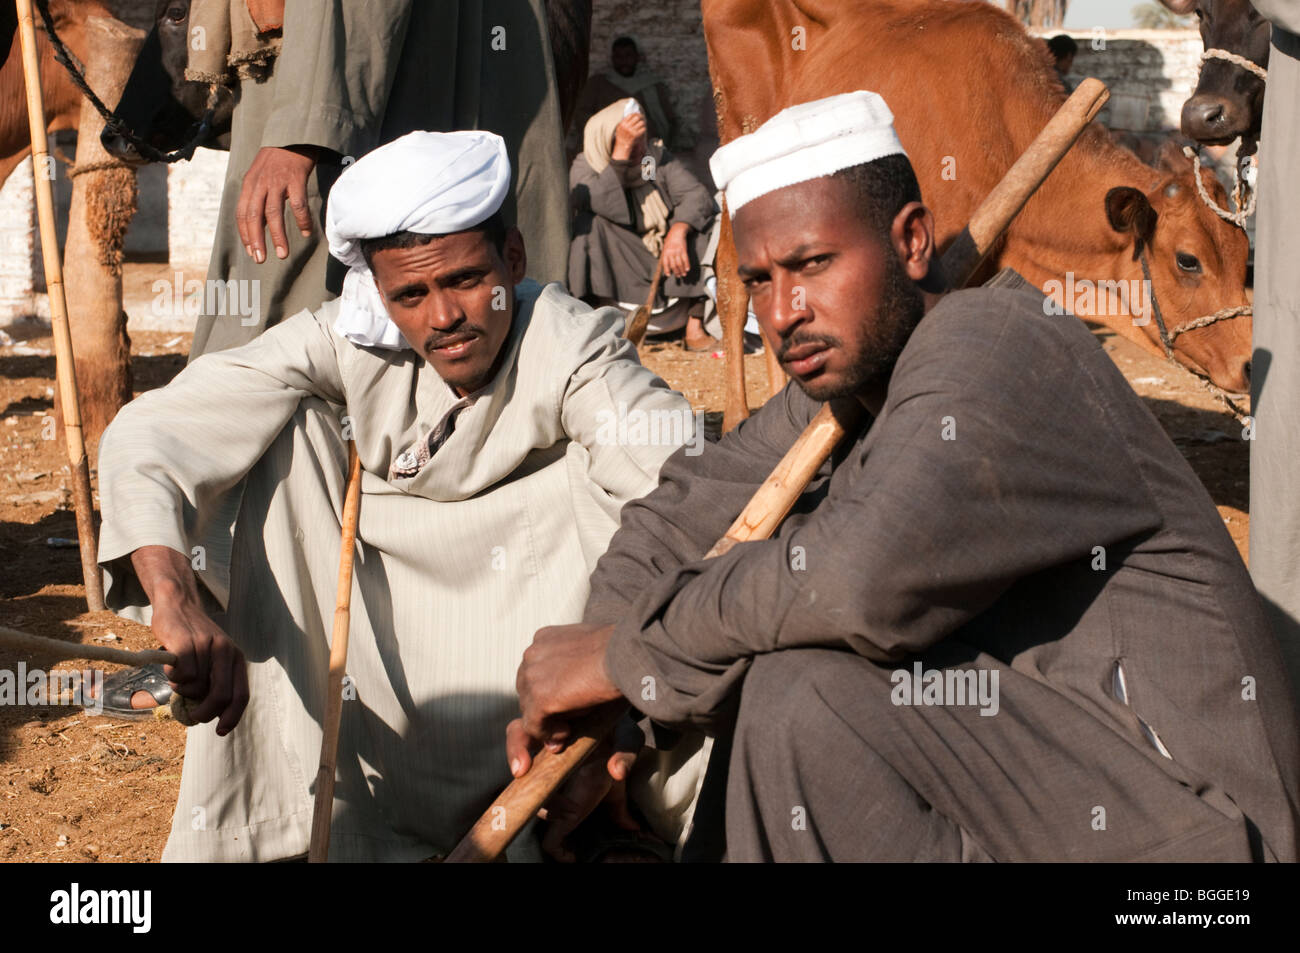 Deux hommes égyptiens dans un marché au bétail dans la vallée du Nil Banque D'Images